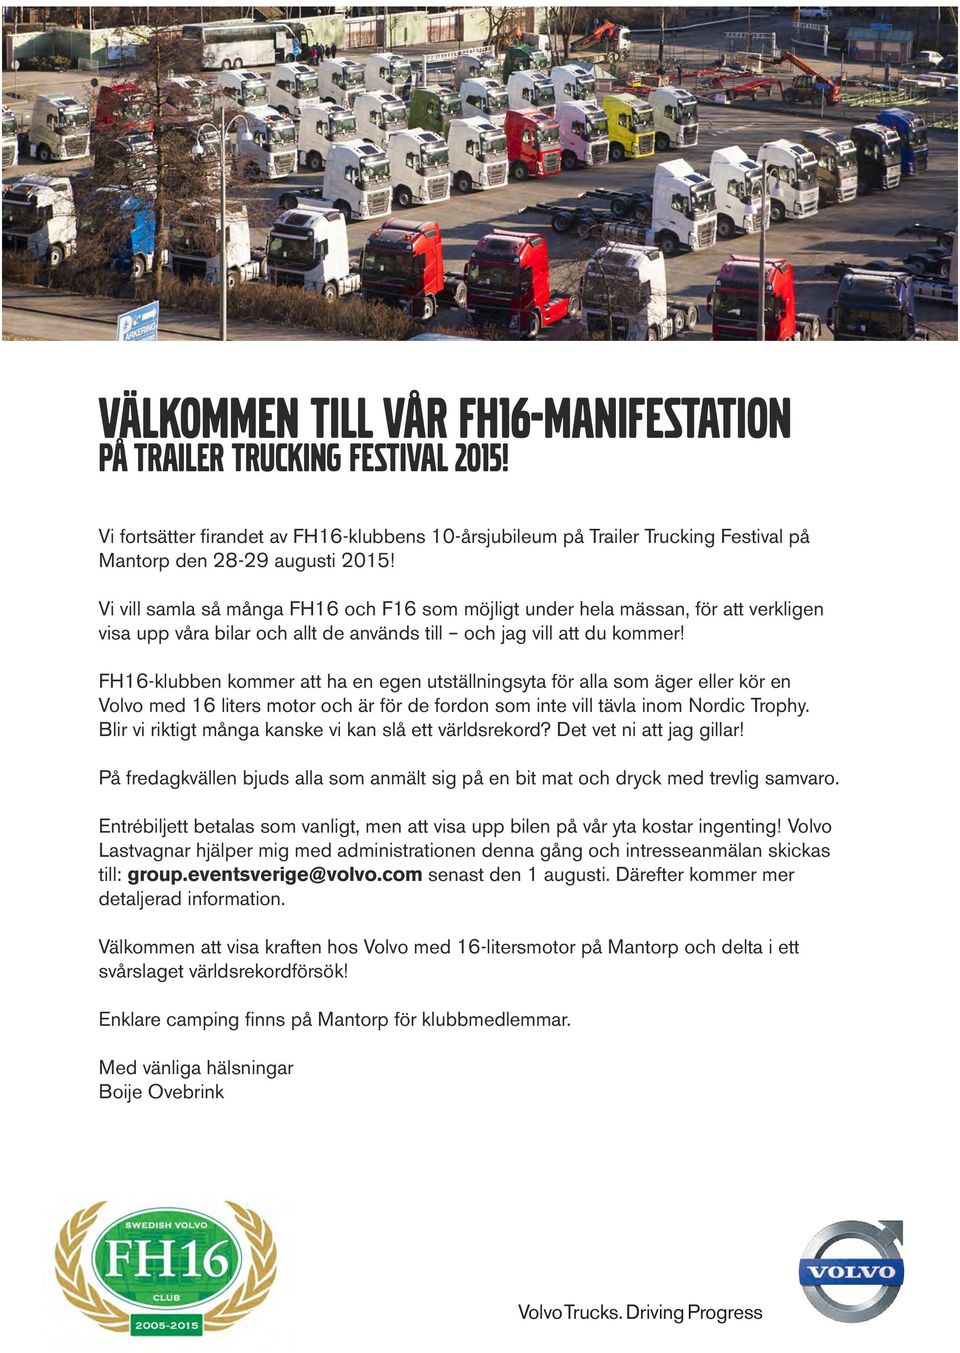 FH16-klubben kommer att ha en egen utställningsyta för alla som äger eller kör en Volvo med 16 liters motor och är för de fordon som inte vill tävla inom Nordic Trophy.